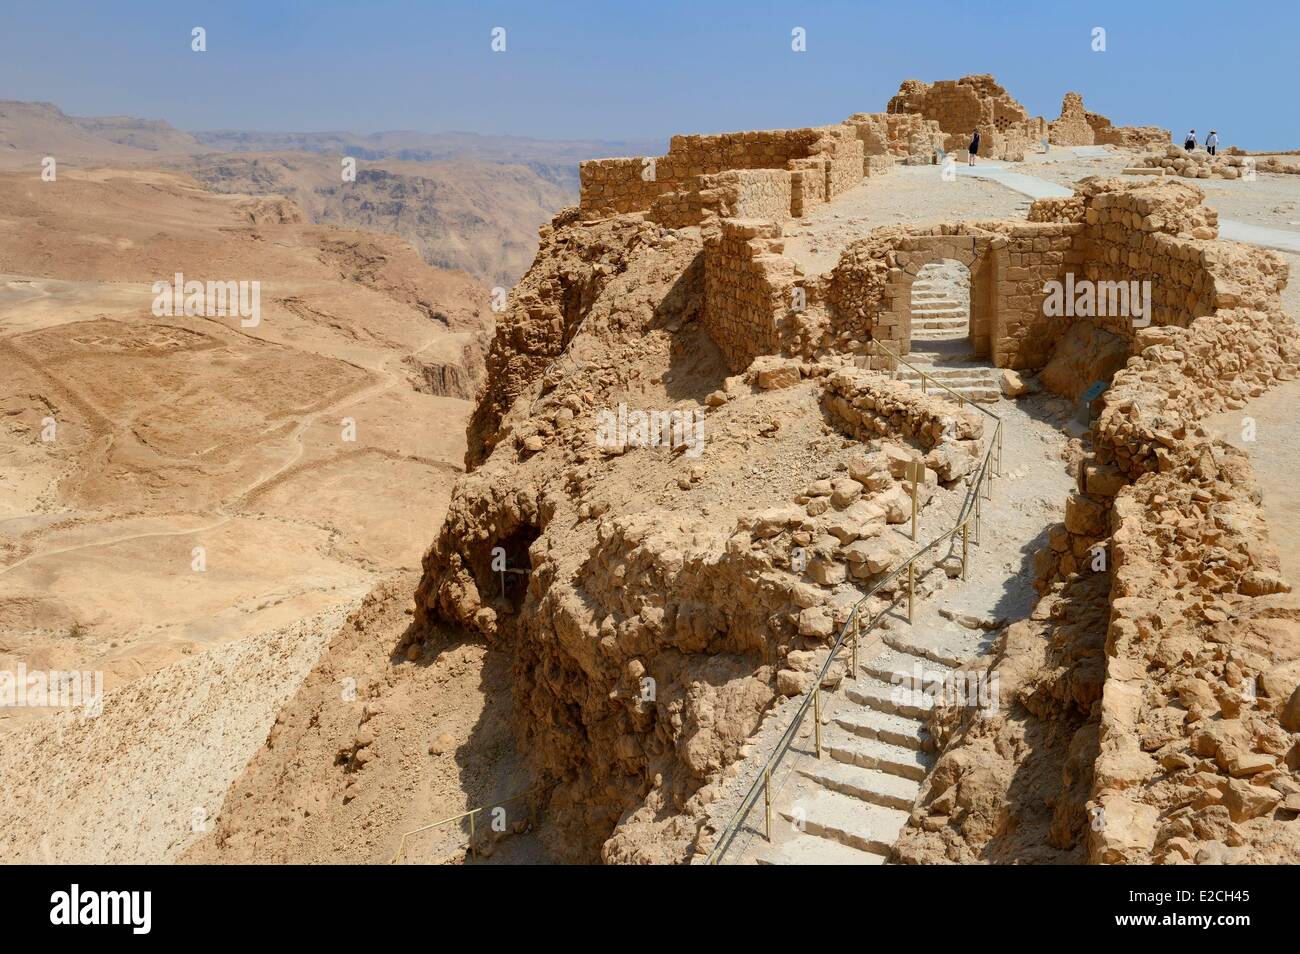 Israel, el desierto del Negev, la fortaleza de Masada, catalogado como Patrimonio Mundial por la UNESCO, la puerta occidental bizantina Foto de stock